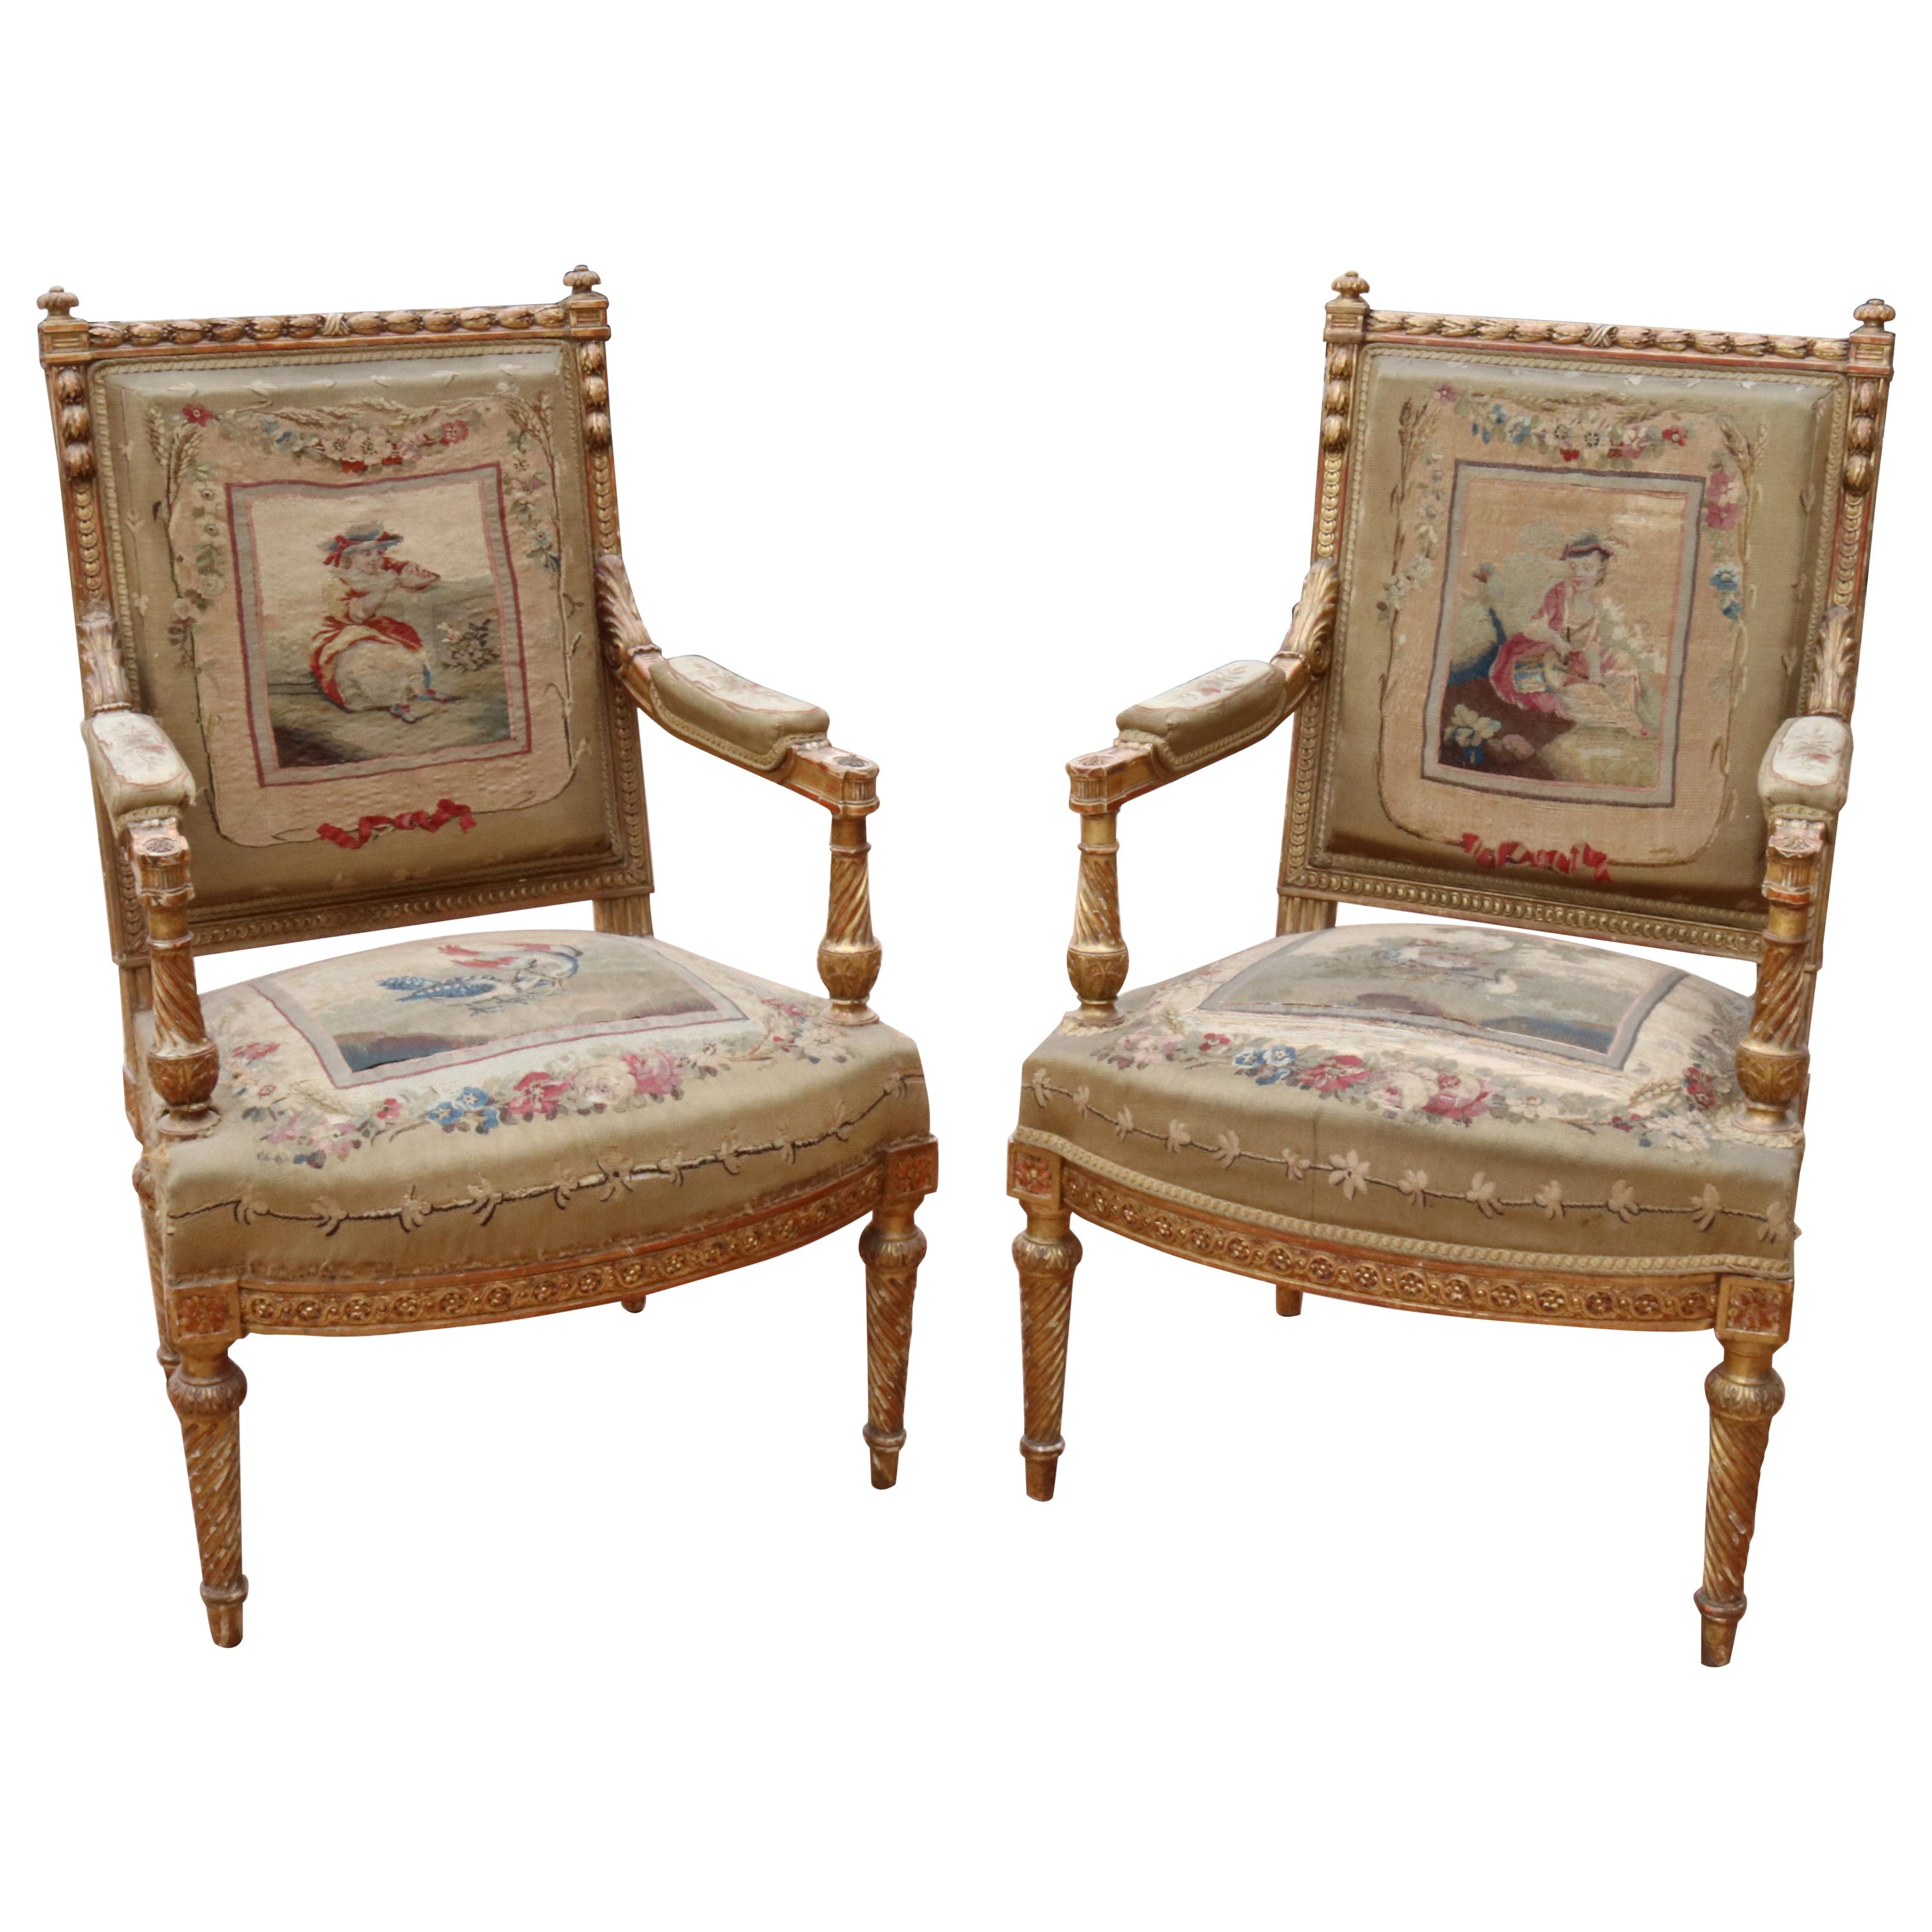 Paire de fauteuils d'Aubusson français du 18ème siècle avec cadres en bois doré